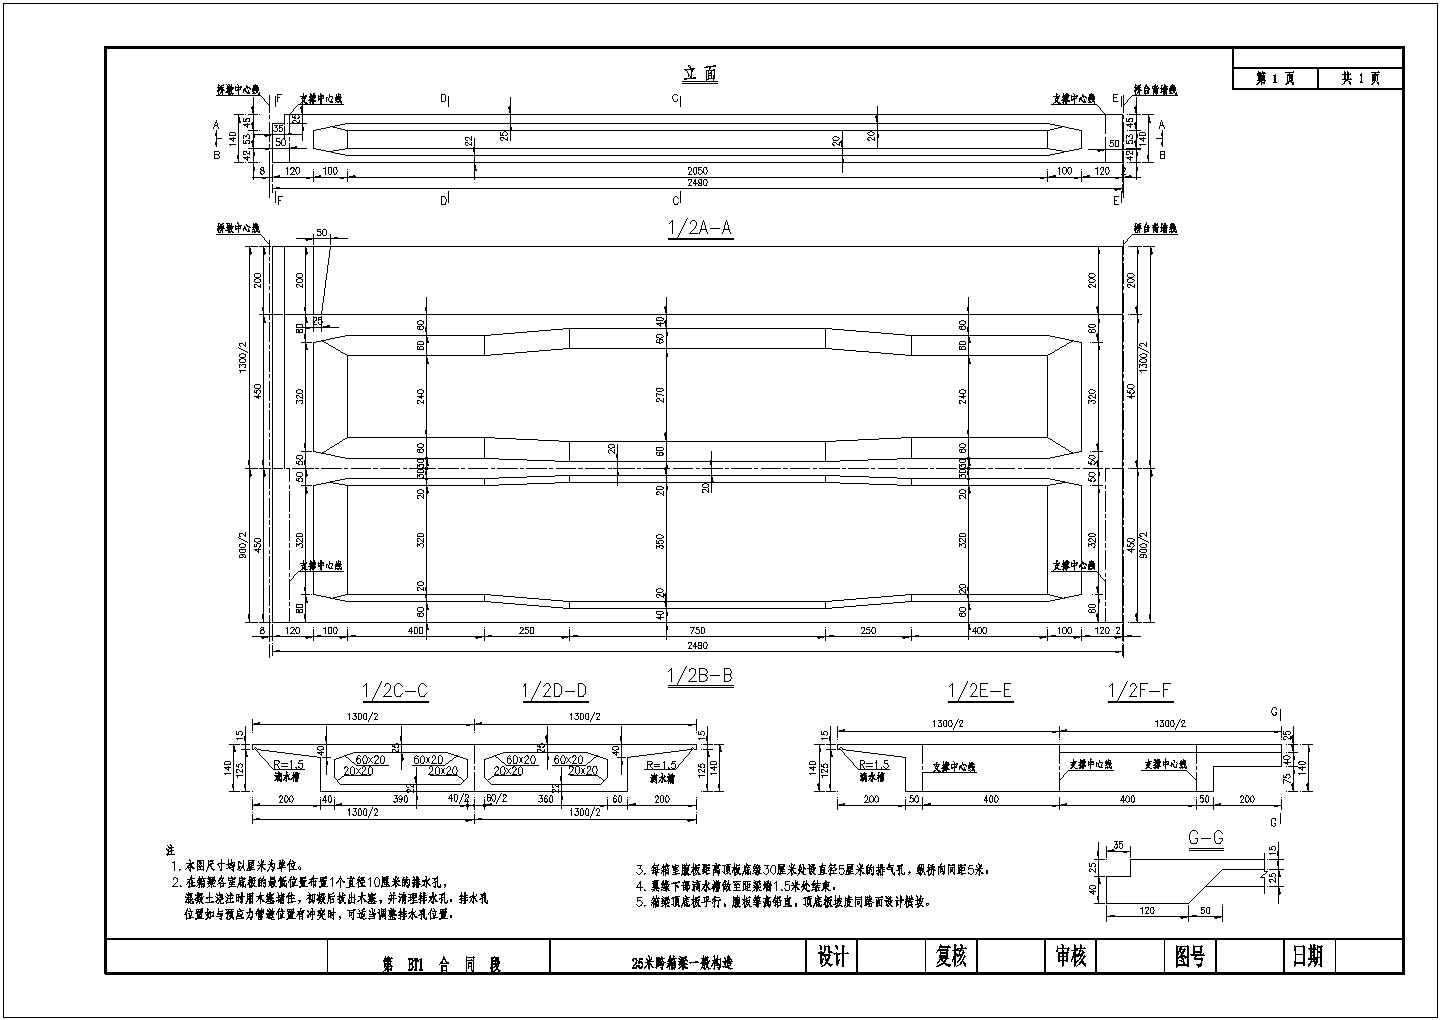 连续钢构箱梁特大桥25m箱梁一般构造节点详图设计